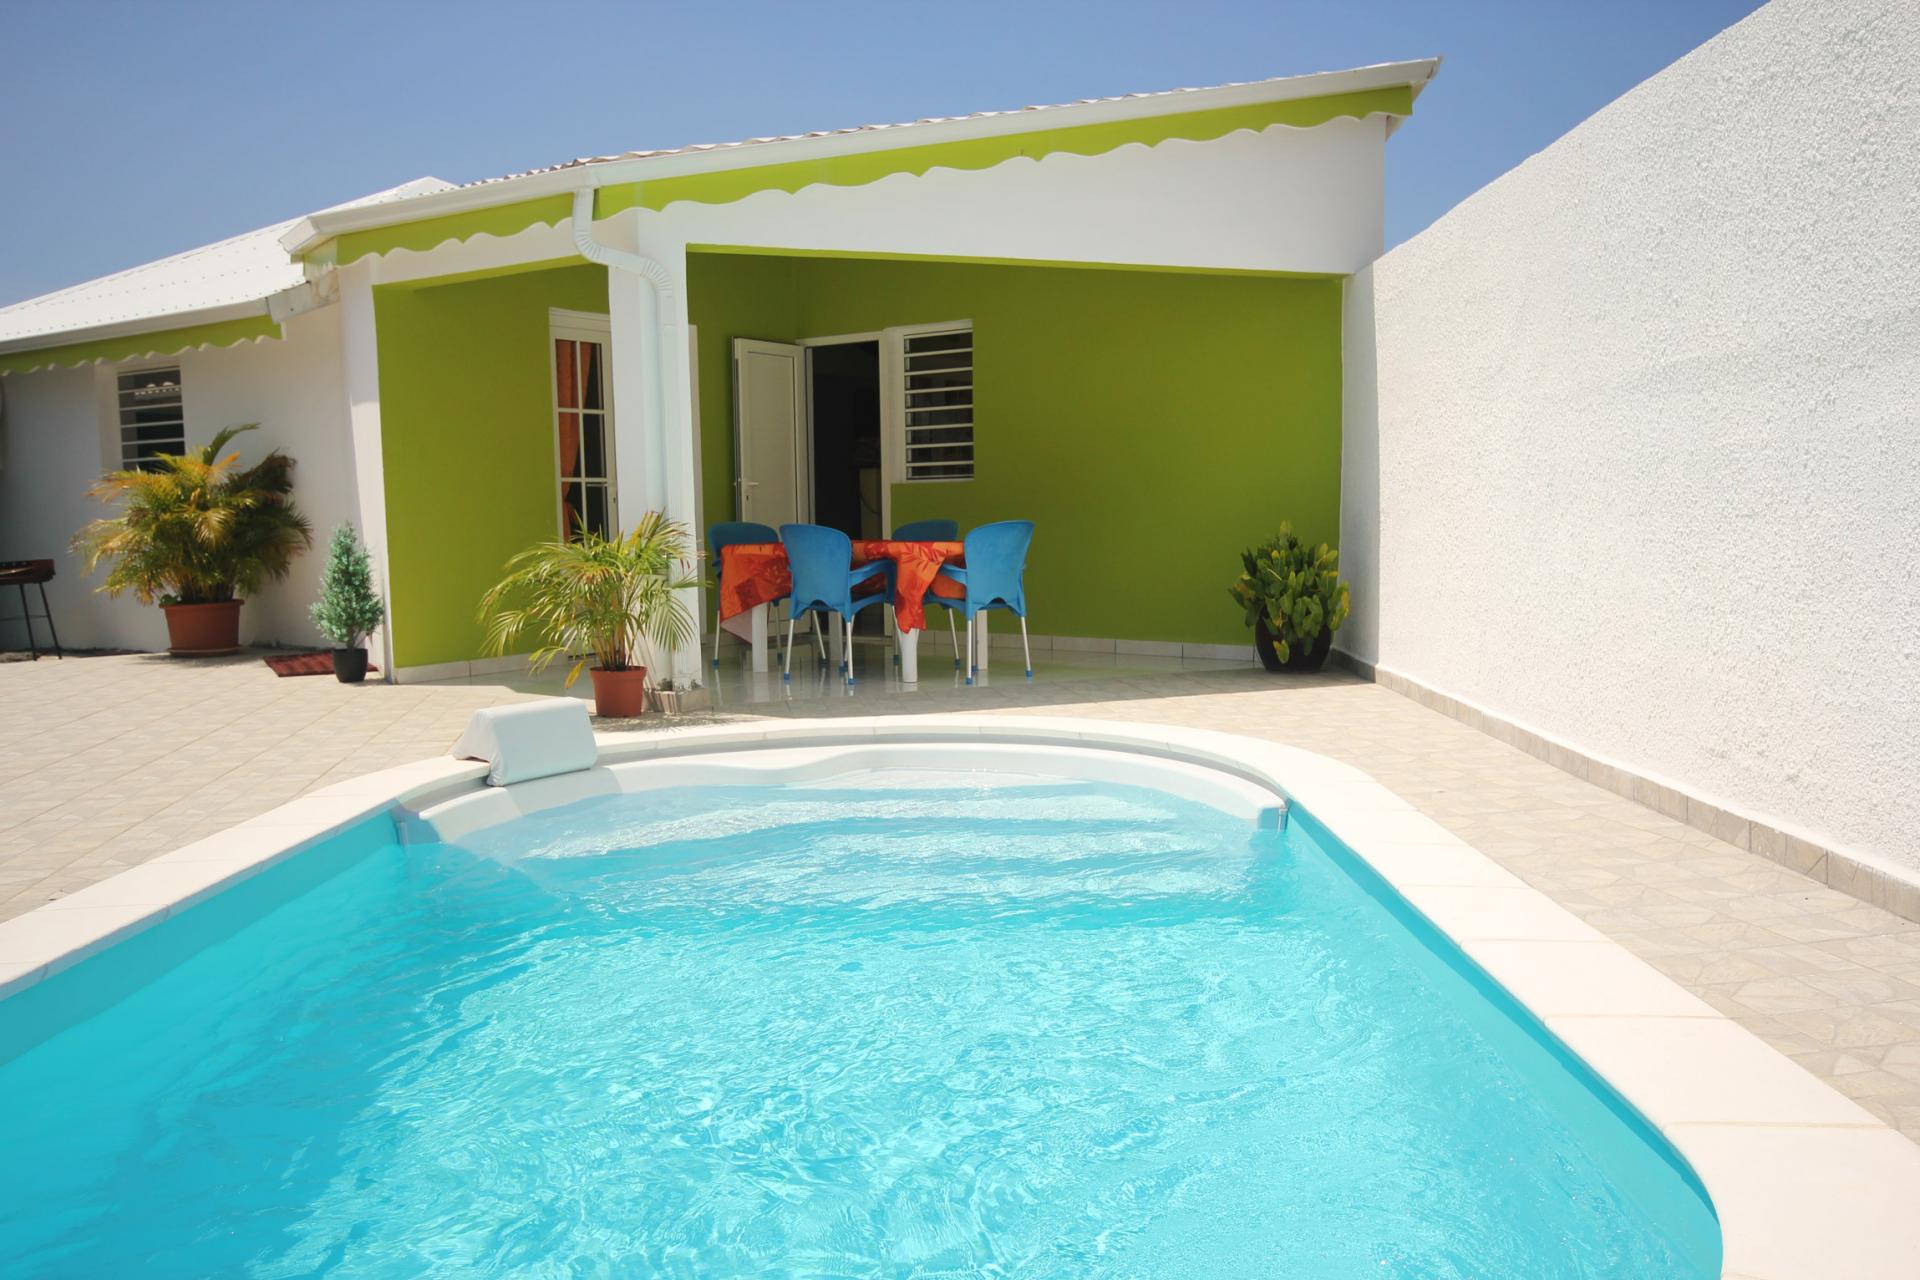 Bungalow avec piscine en Guadeloupe - Vue d'ensemble